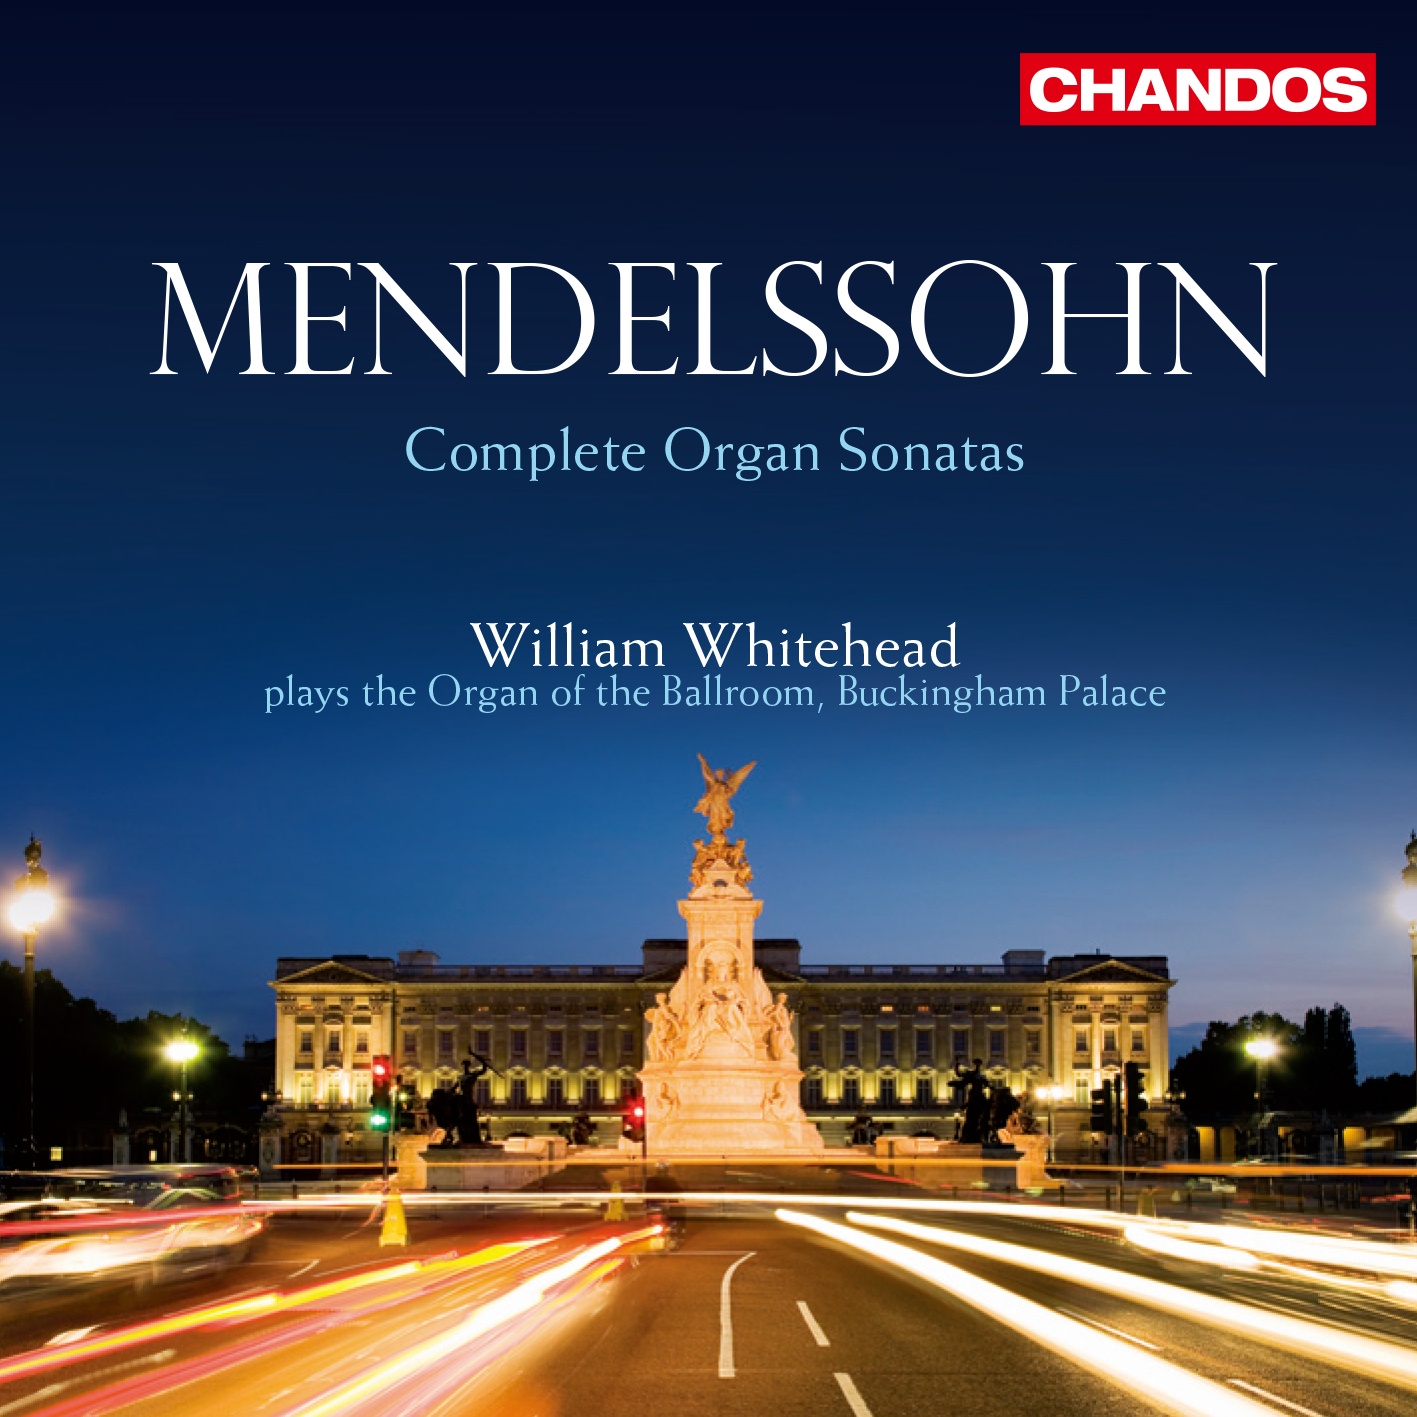 Felix Mendelssohn: Organ Sonata No. 4 in B flat major, Op. 65/4 - 4. Allegro maestoso e vivace